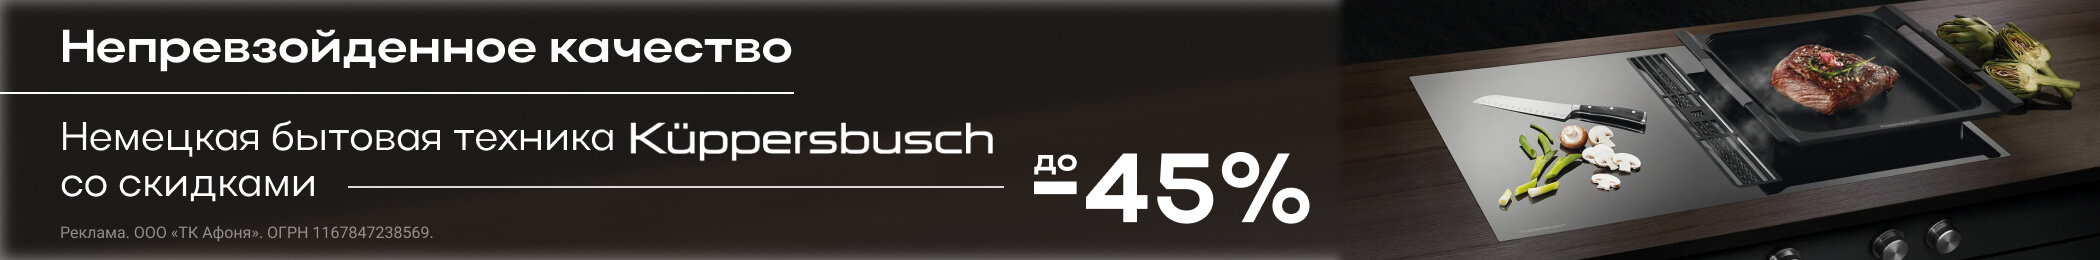 Выгода до -45% при покупке бытовой техники непревзойденного качества от немецкого производителя Kuppersbusch.